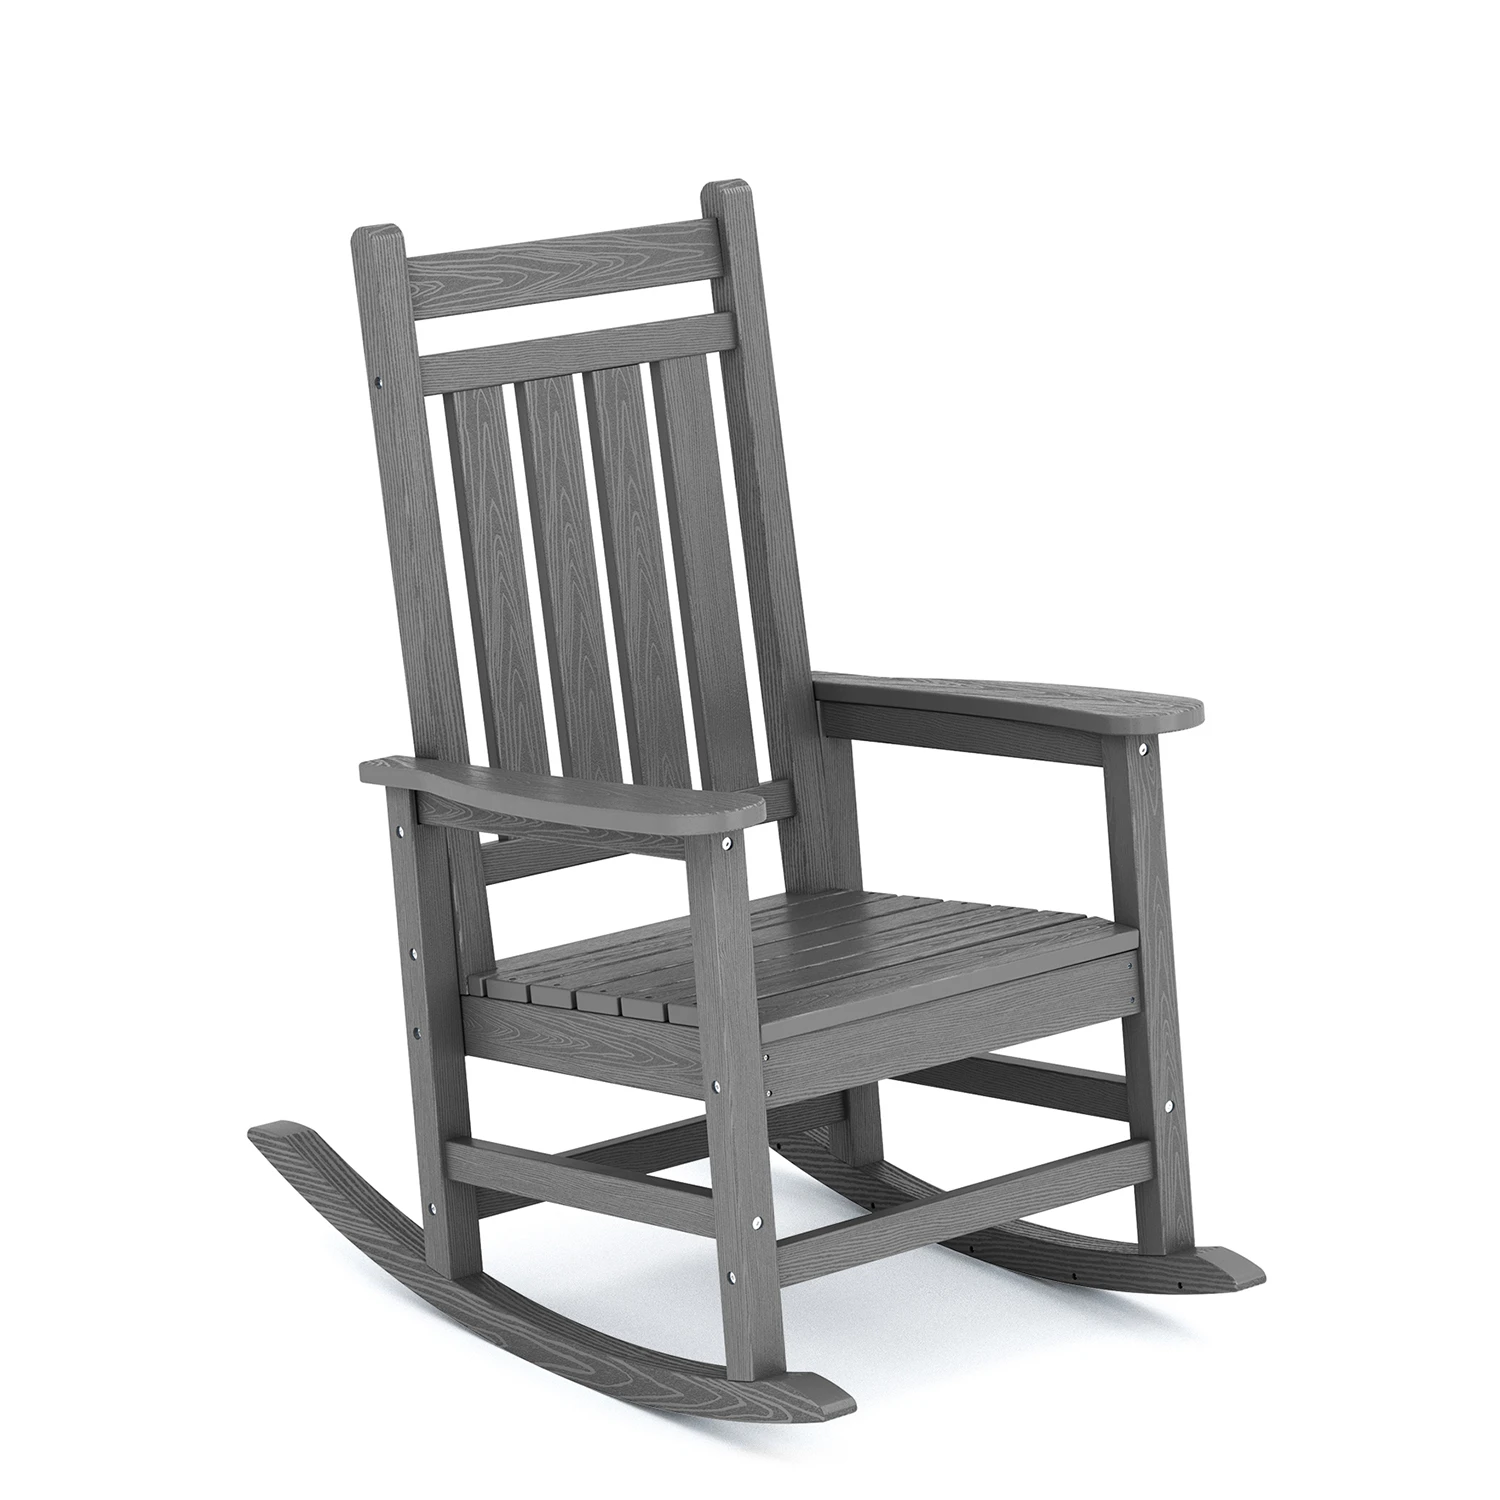 MANOIR Porch Rocking Chair in Dark Gray